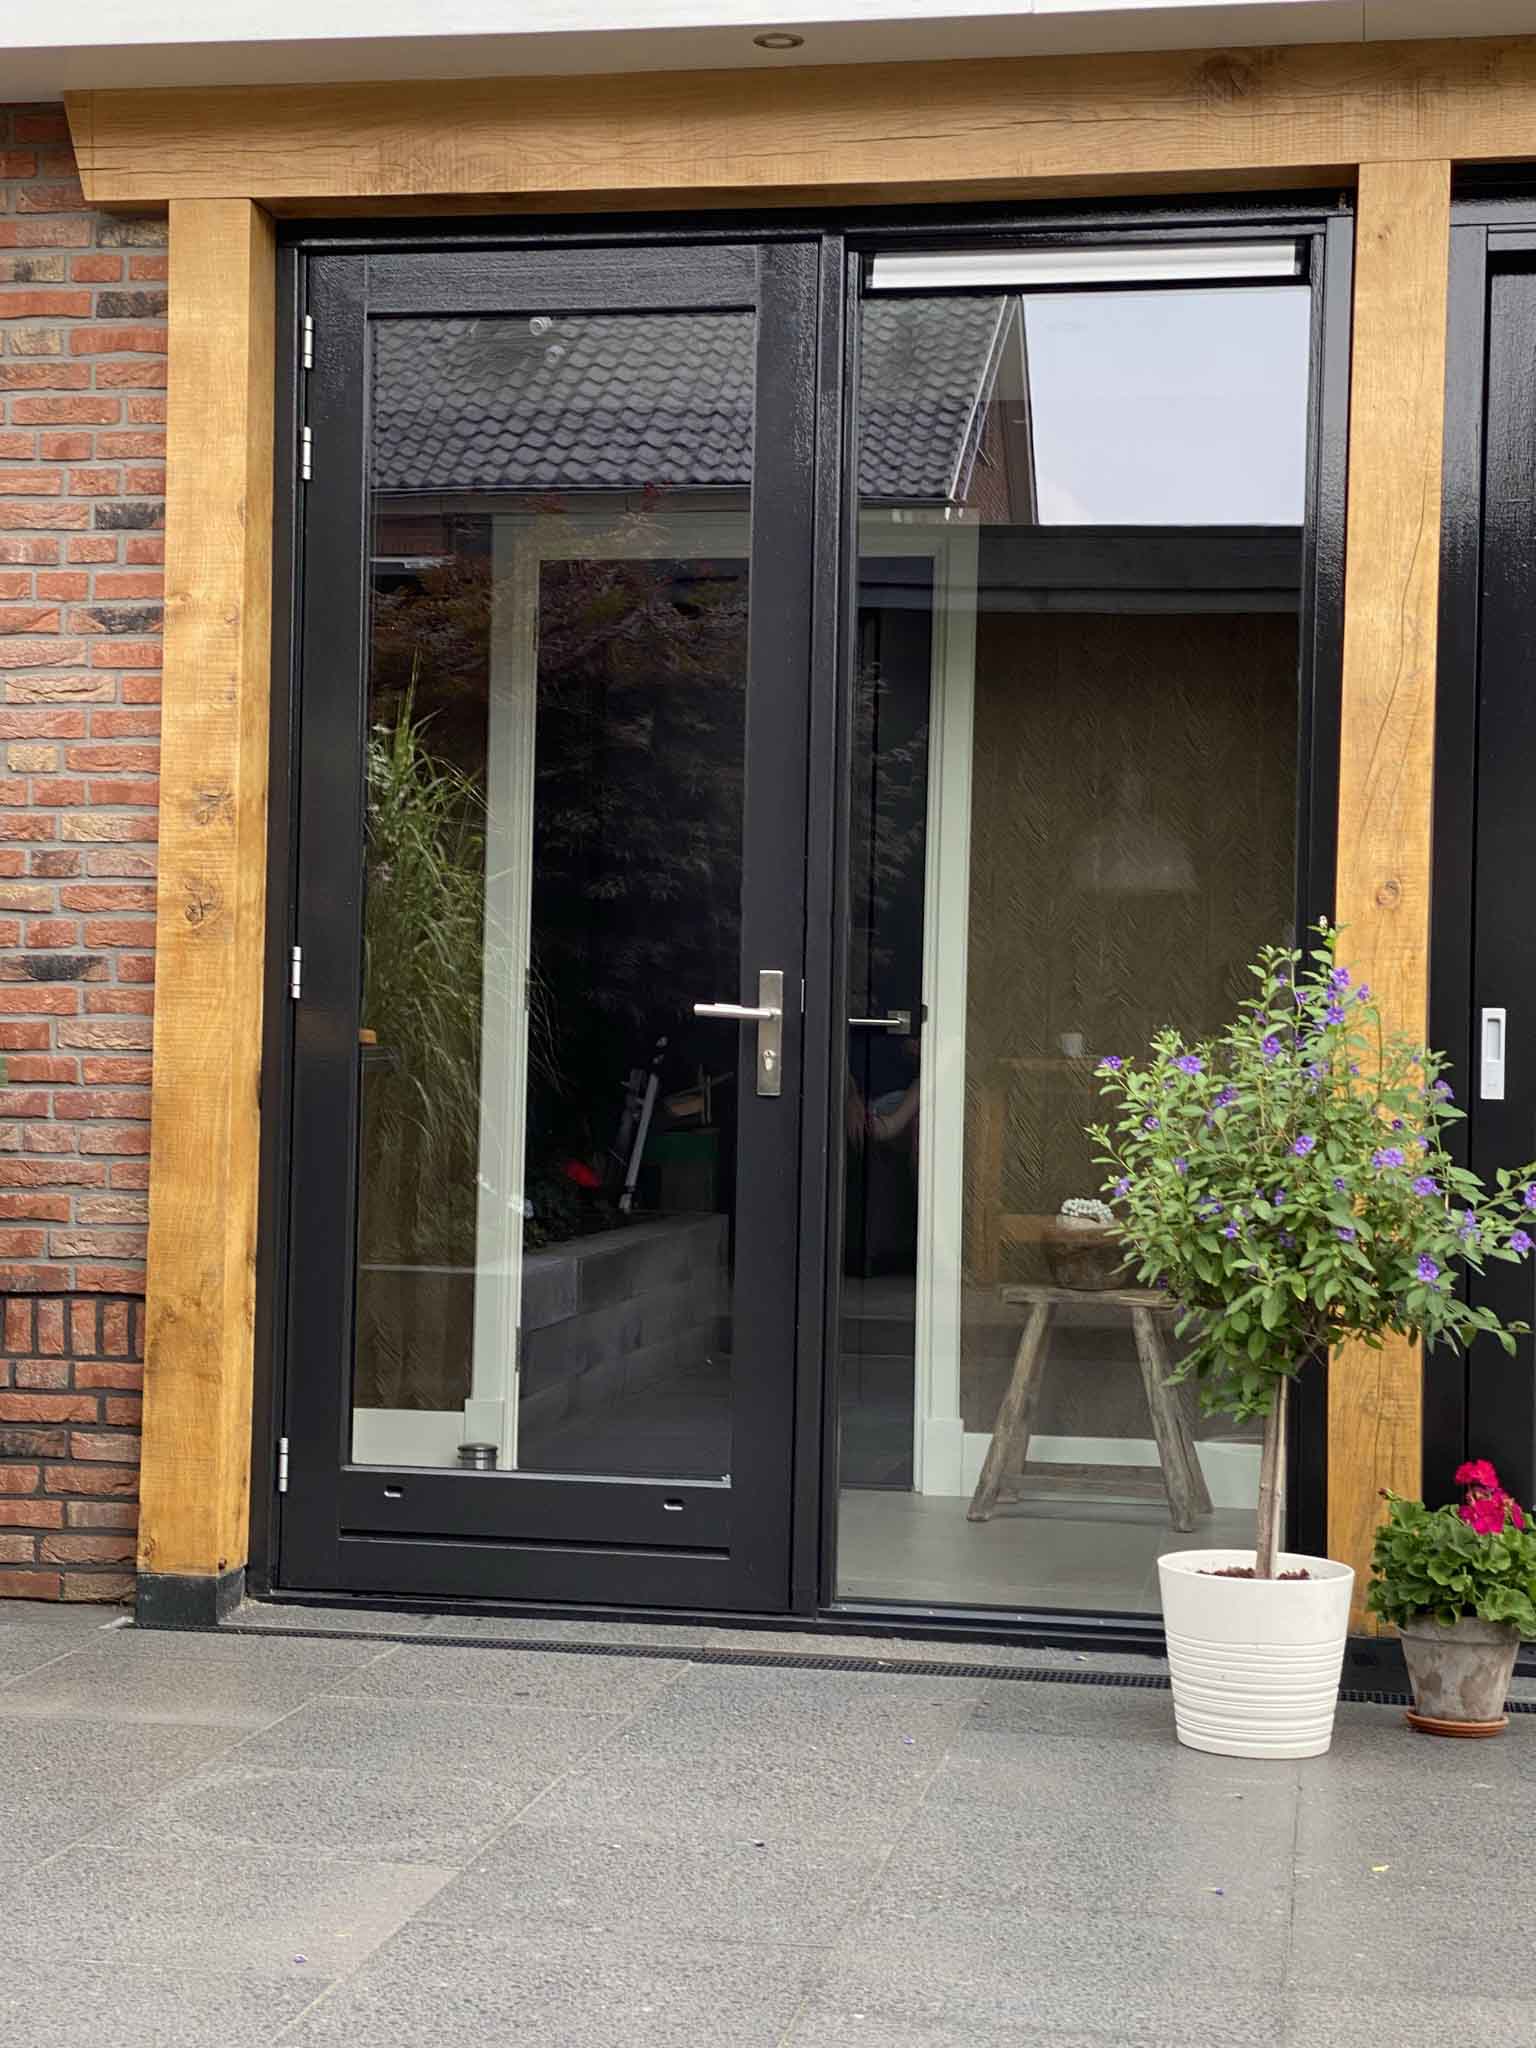 coupon geef de bloem water Dusver Naar buitendraaiende houten deur met zijlicht ☑️ Kozijnshop.nl ☑️ Direct  Prijs